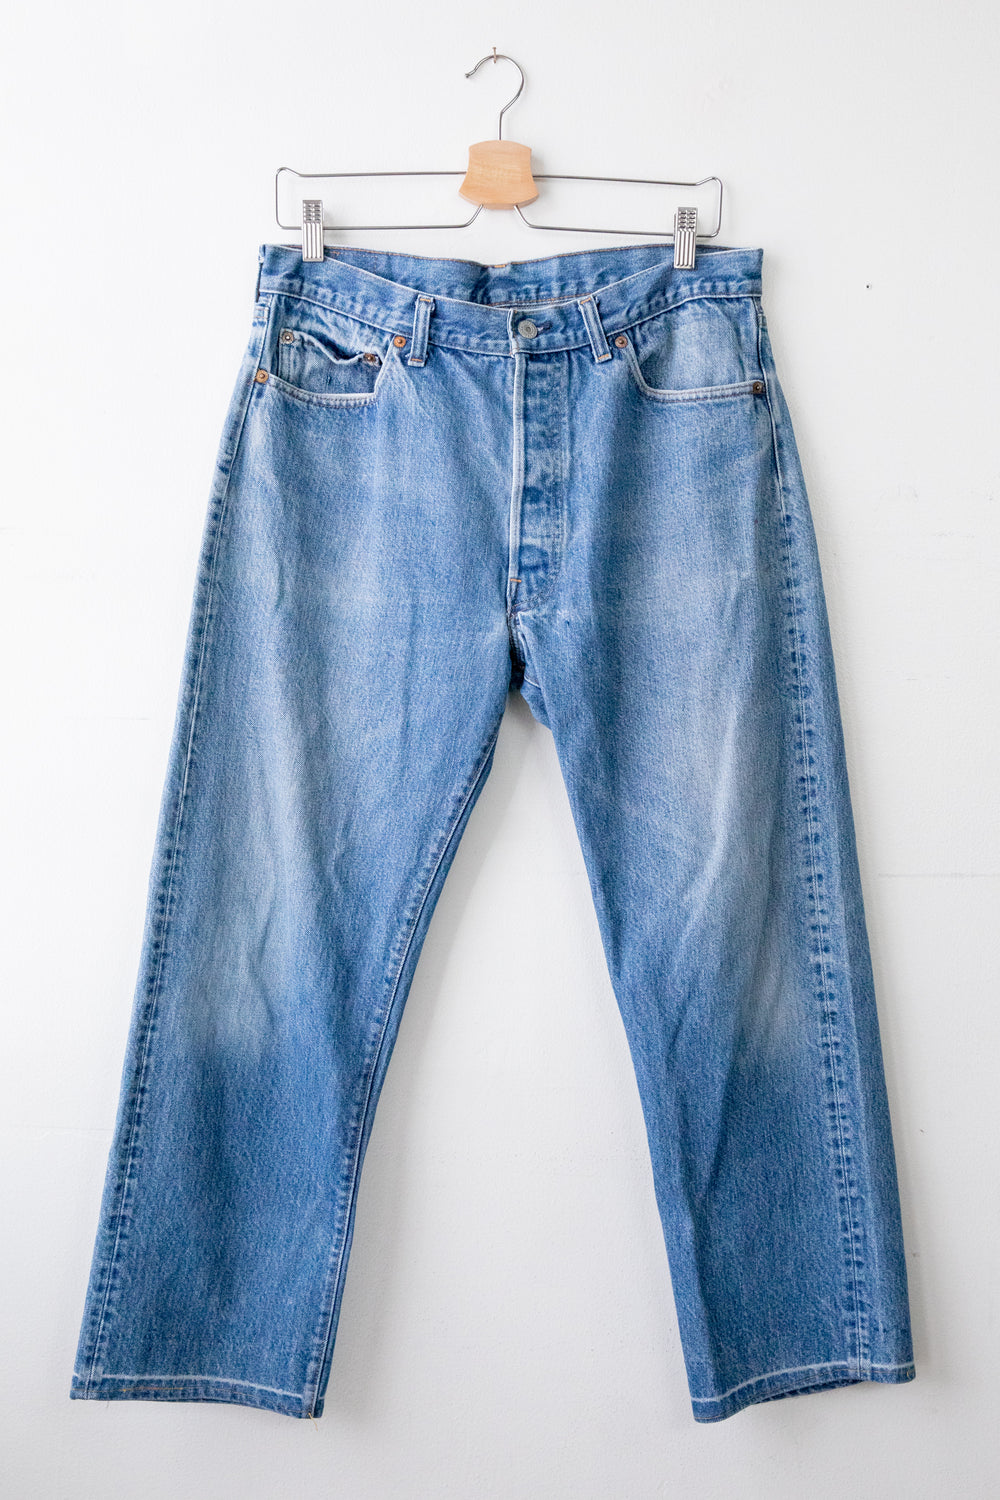 Vintage Lee Jeans 2